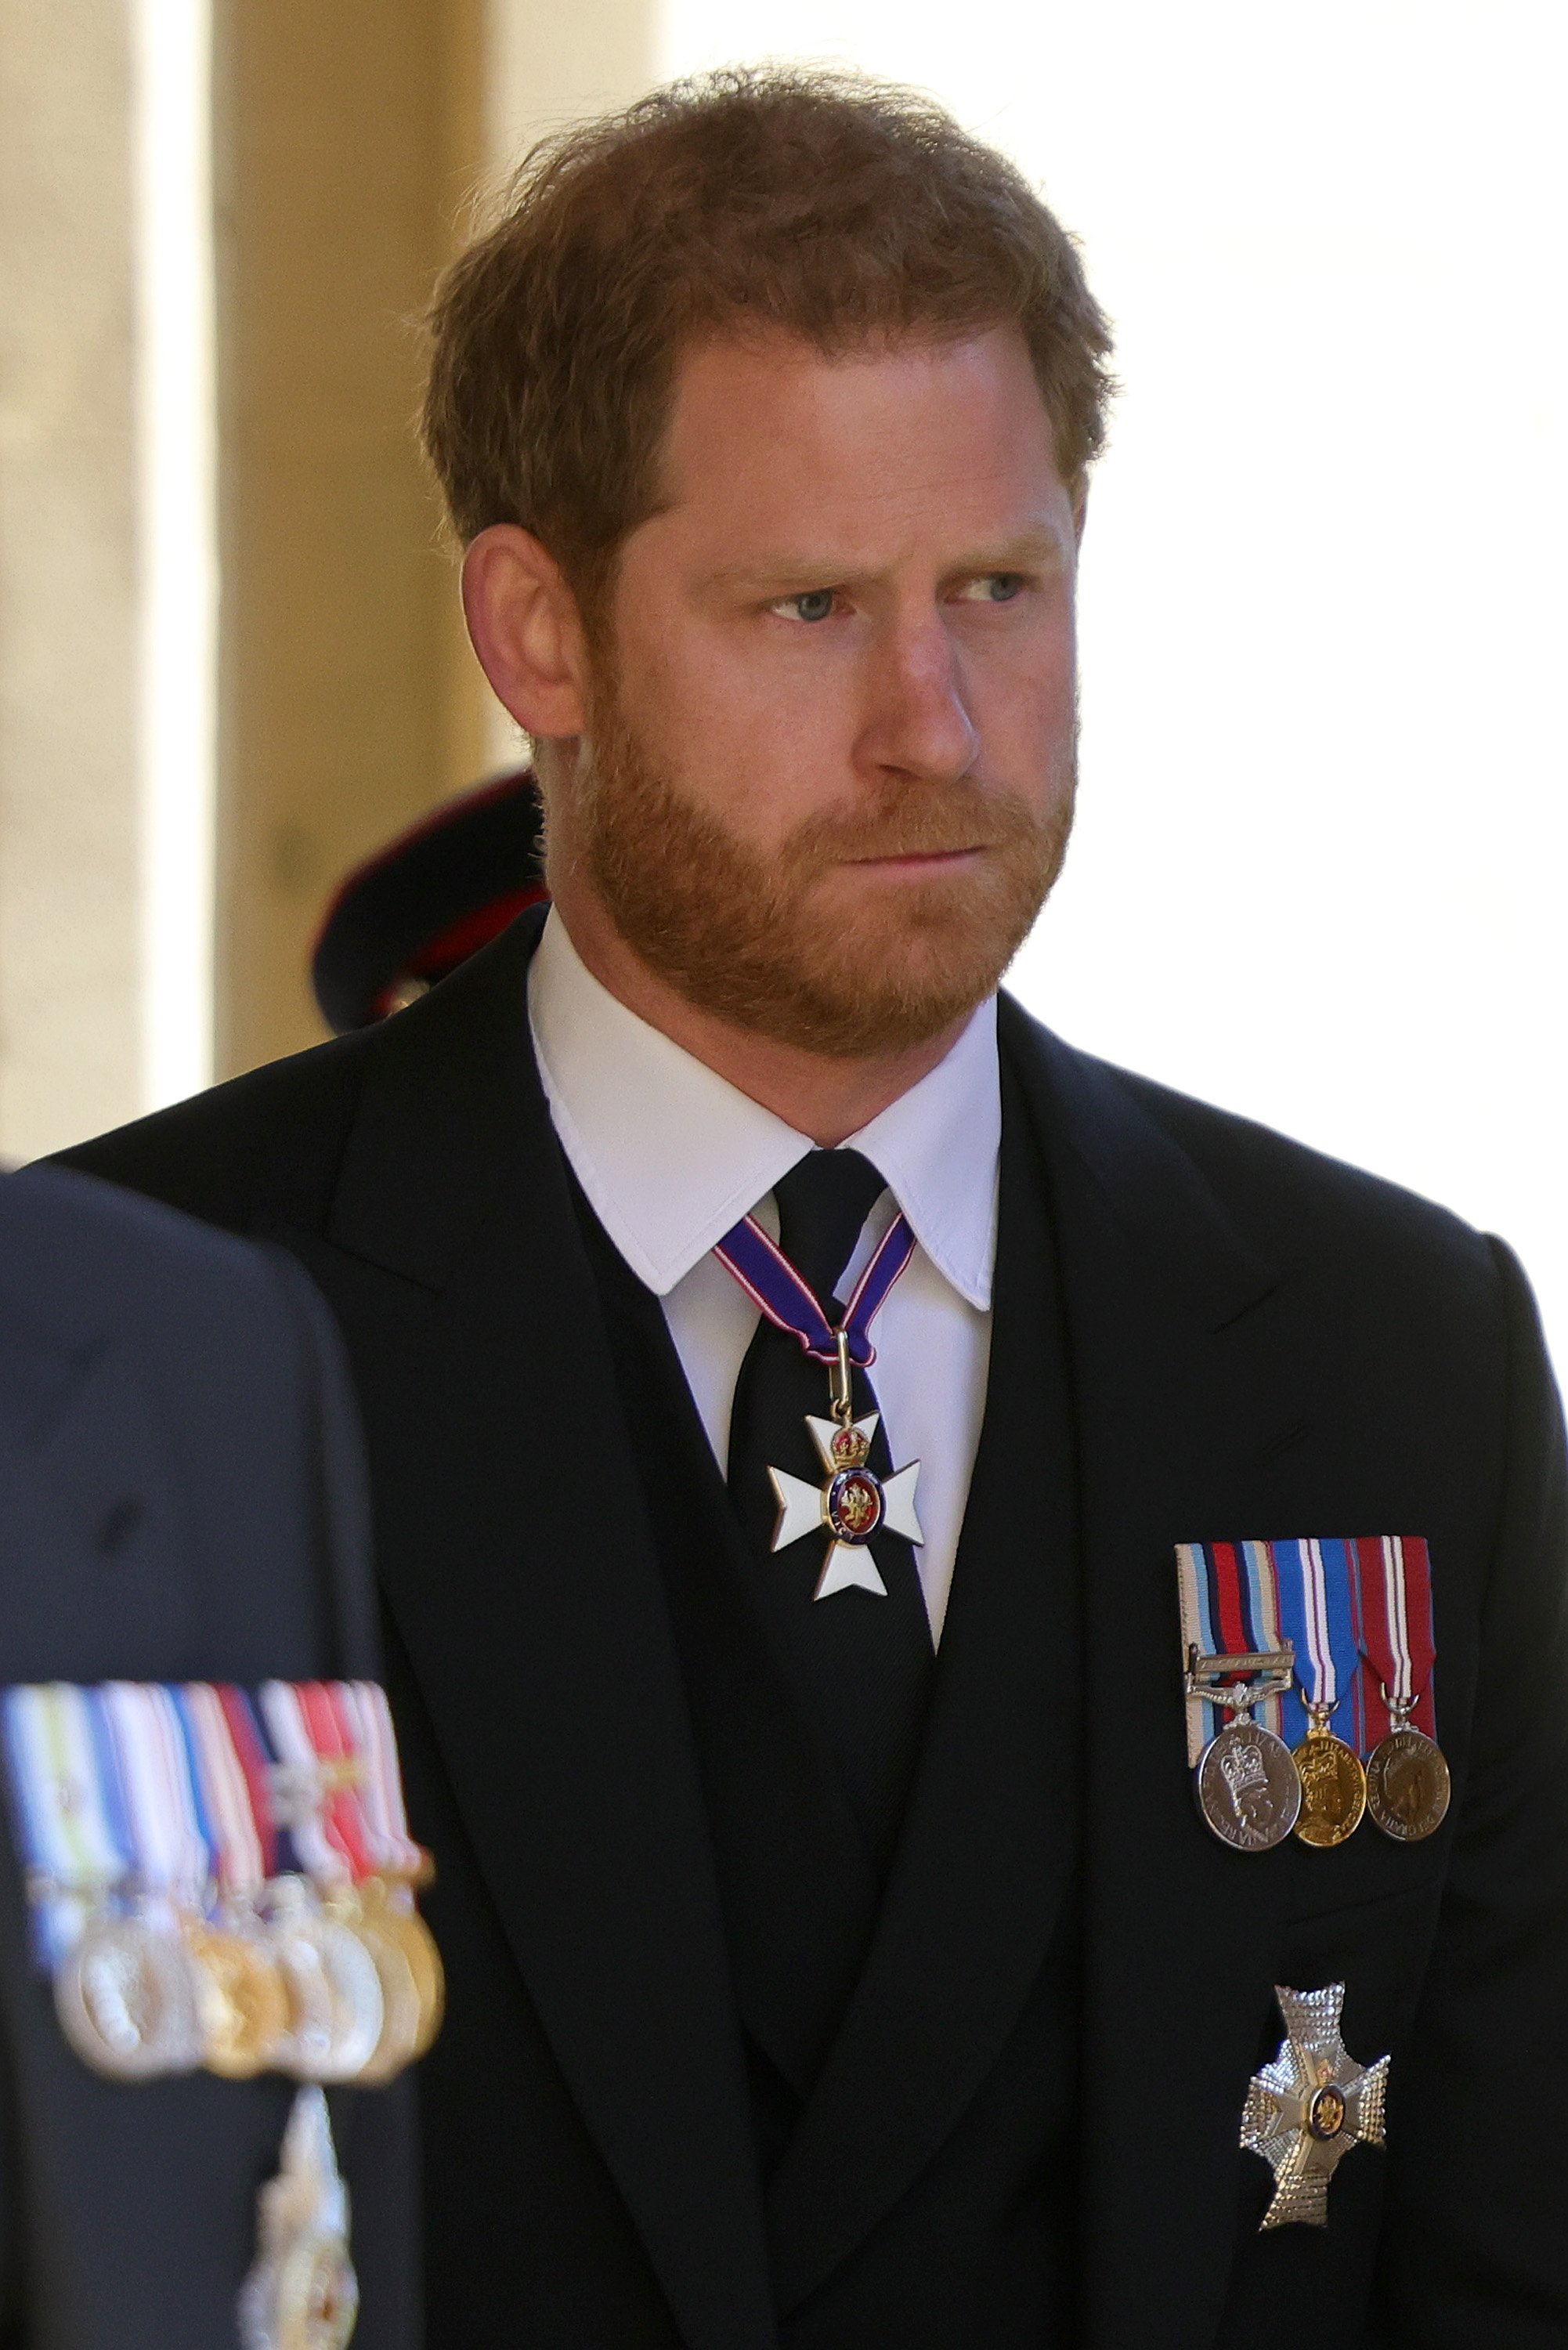 Prinz Harry, Herzog von Sussex, während der Beerdigung von Prinz Philip, Herzog von Edinburgh, auf Schloss Windsor am 17. April 2021 in Windsor, England | Quelle: Getty Images